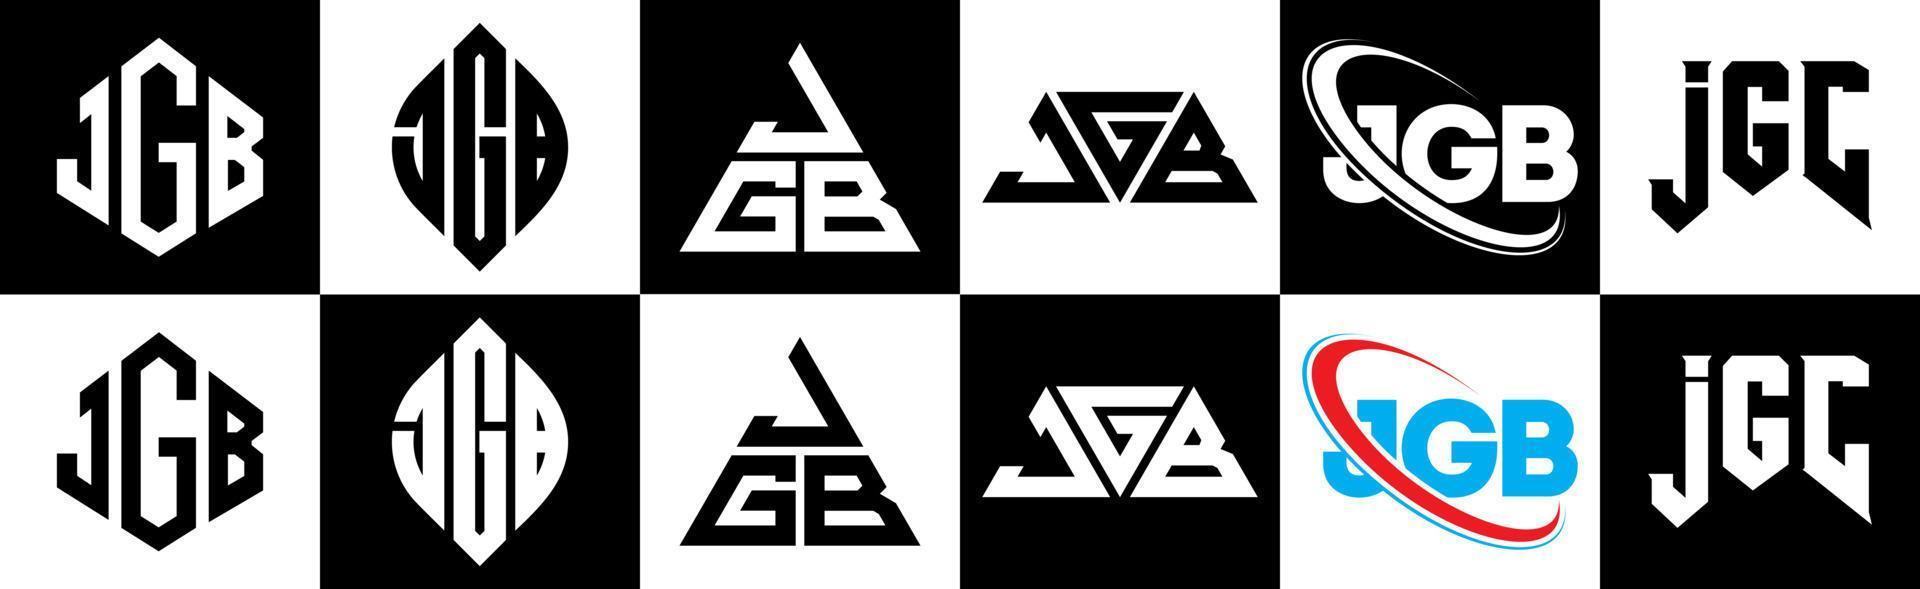 création de logo de lettre jgb en six styles. jgb polygone, cercle, triangle, hexagone, style plat et simple avec logo de lettre de variation de couleur noir et blanc dans un plan de travail. logo jgb minimaliste et classique vecteur